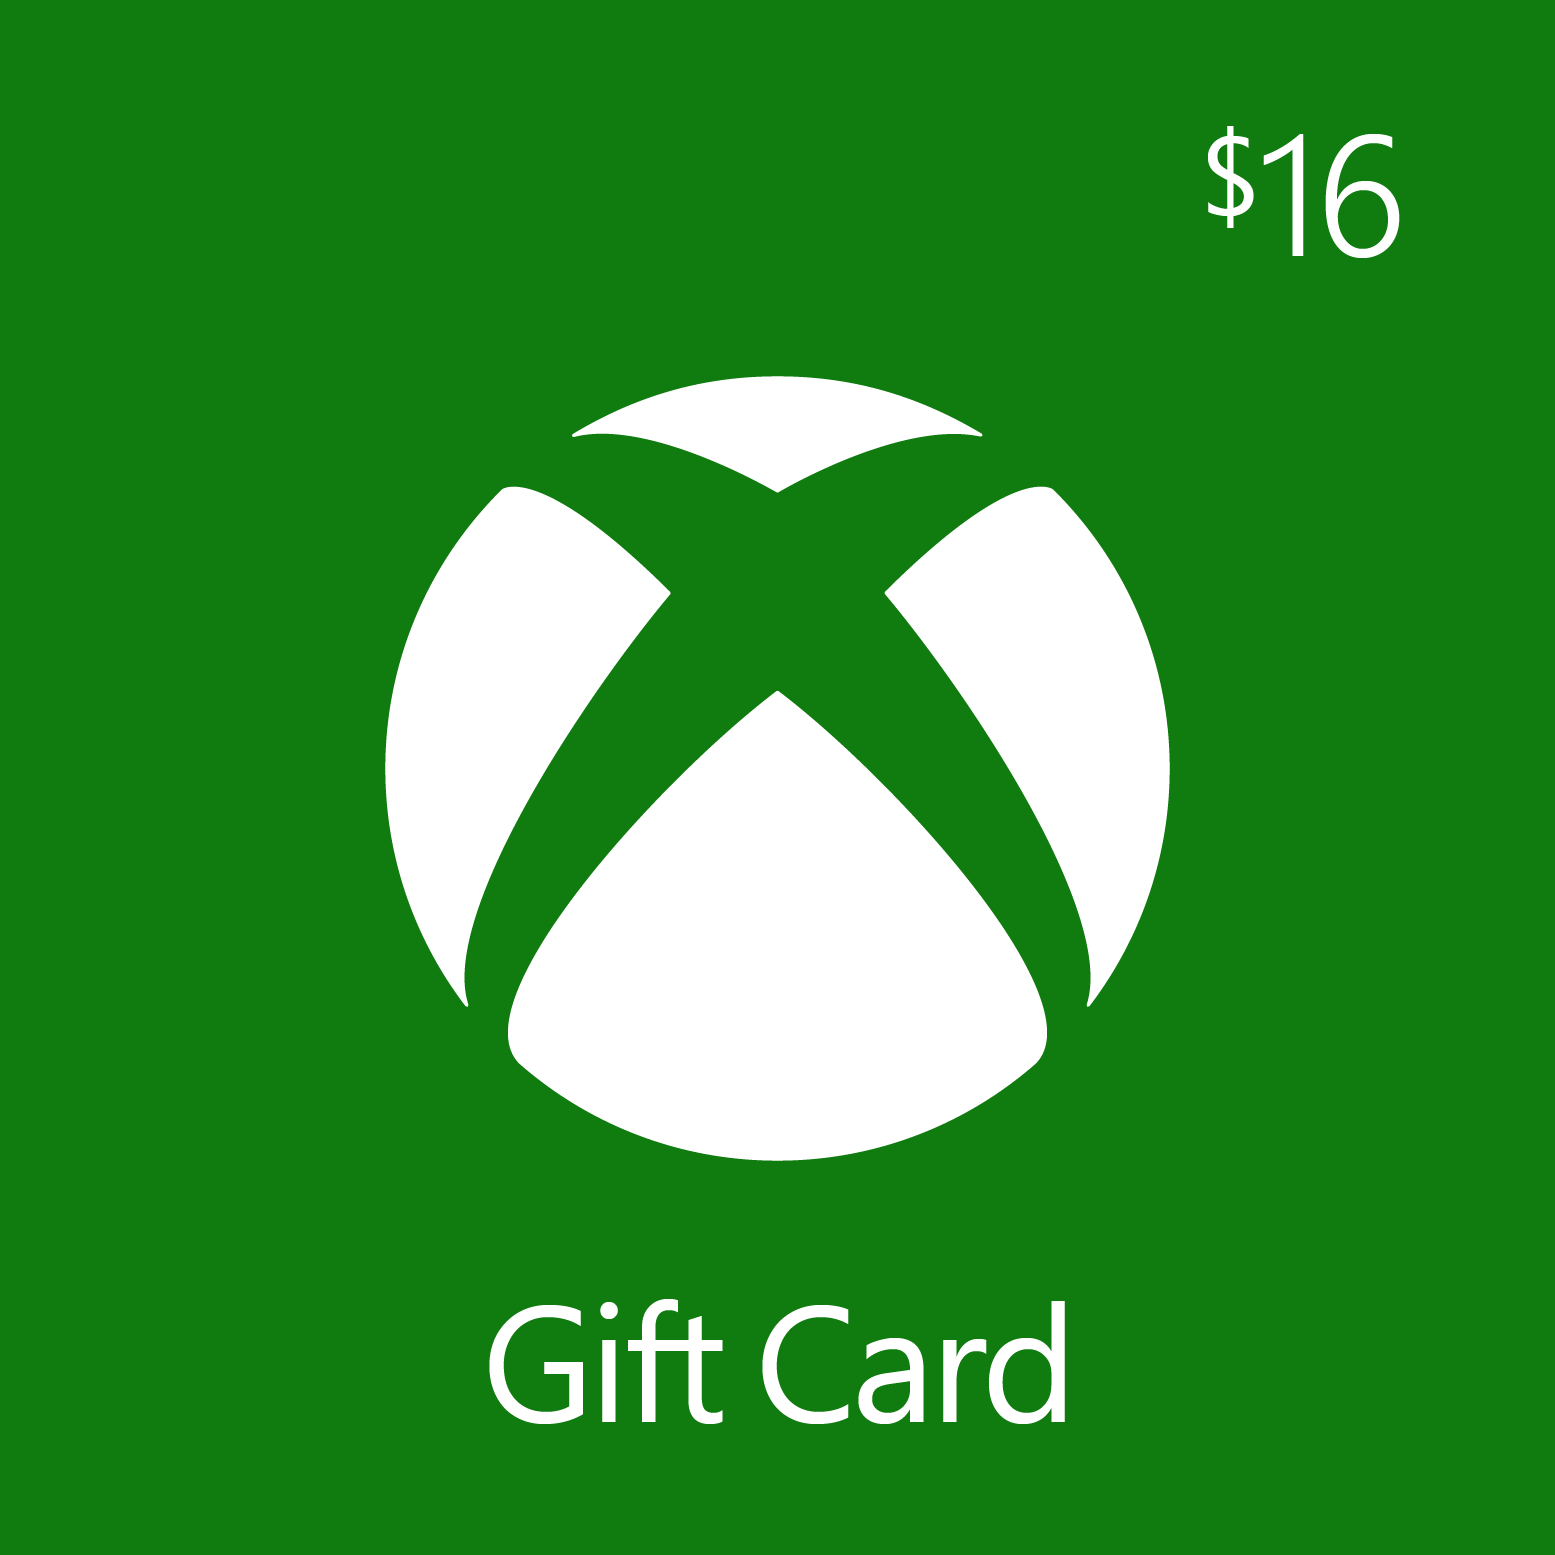 Adquira agora o seu gift card Xbox